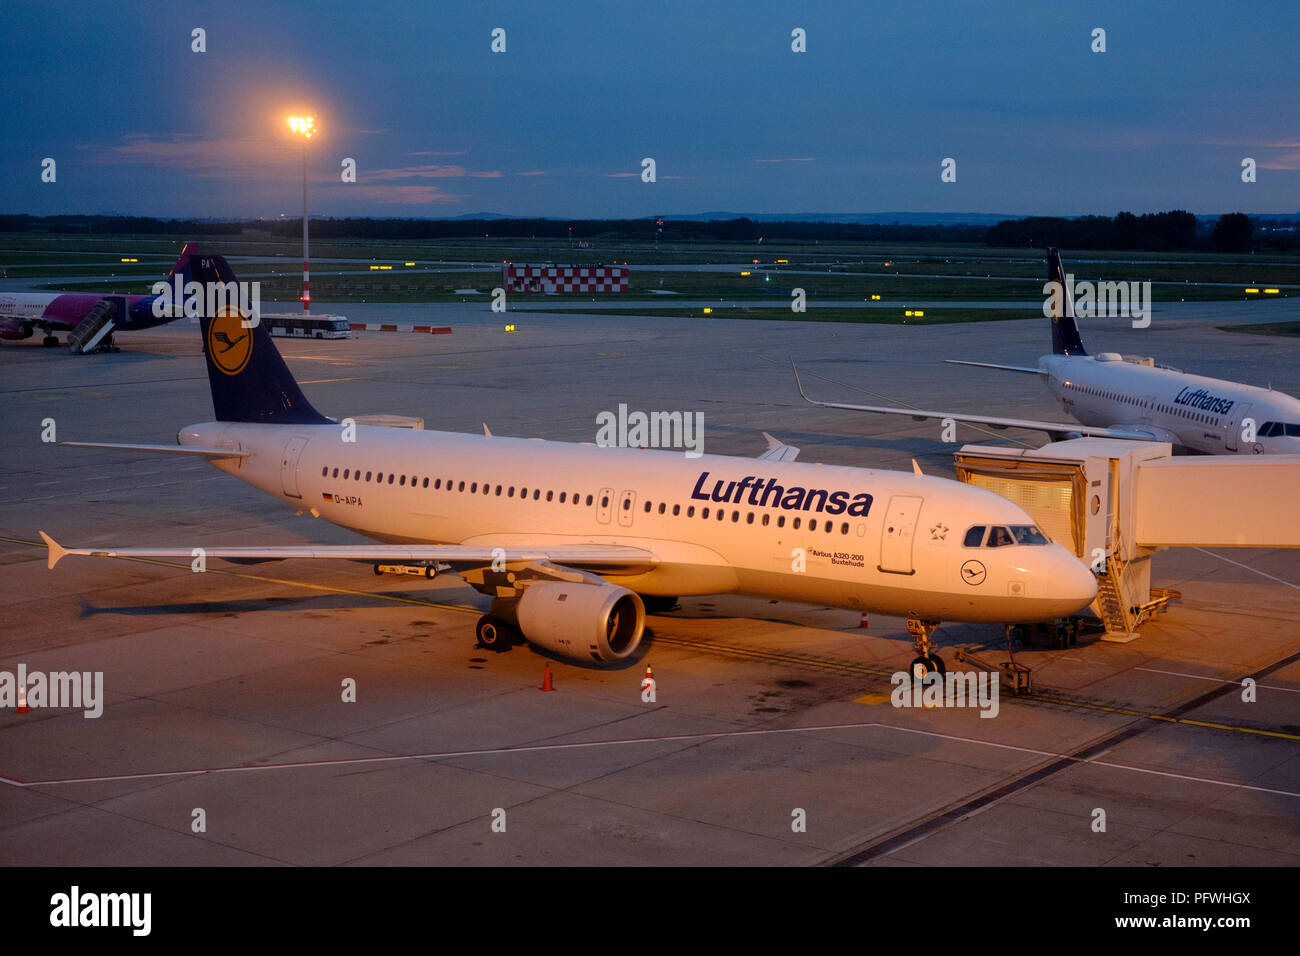 Lufthansa Airbus A320-200 d-aipa sul piazzale di sosta allo spuntar del giorno Piazza Ferenc Liszt dall'aeroporto internazionale di Budapest Ungheria Foto Stock